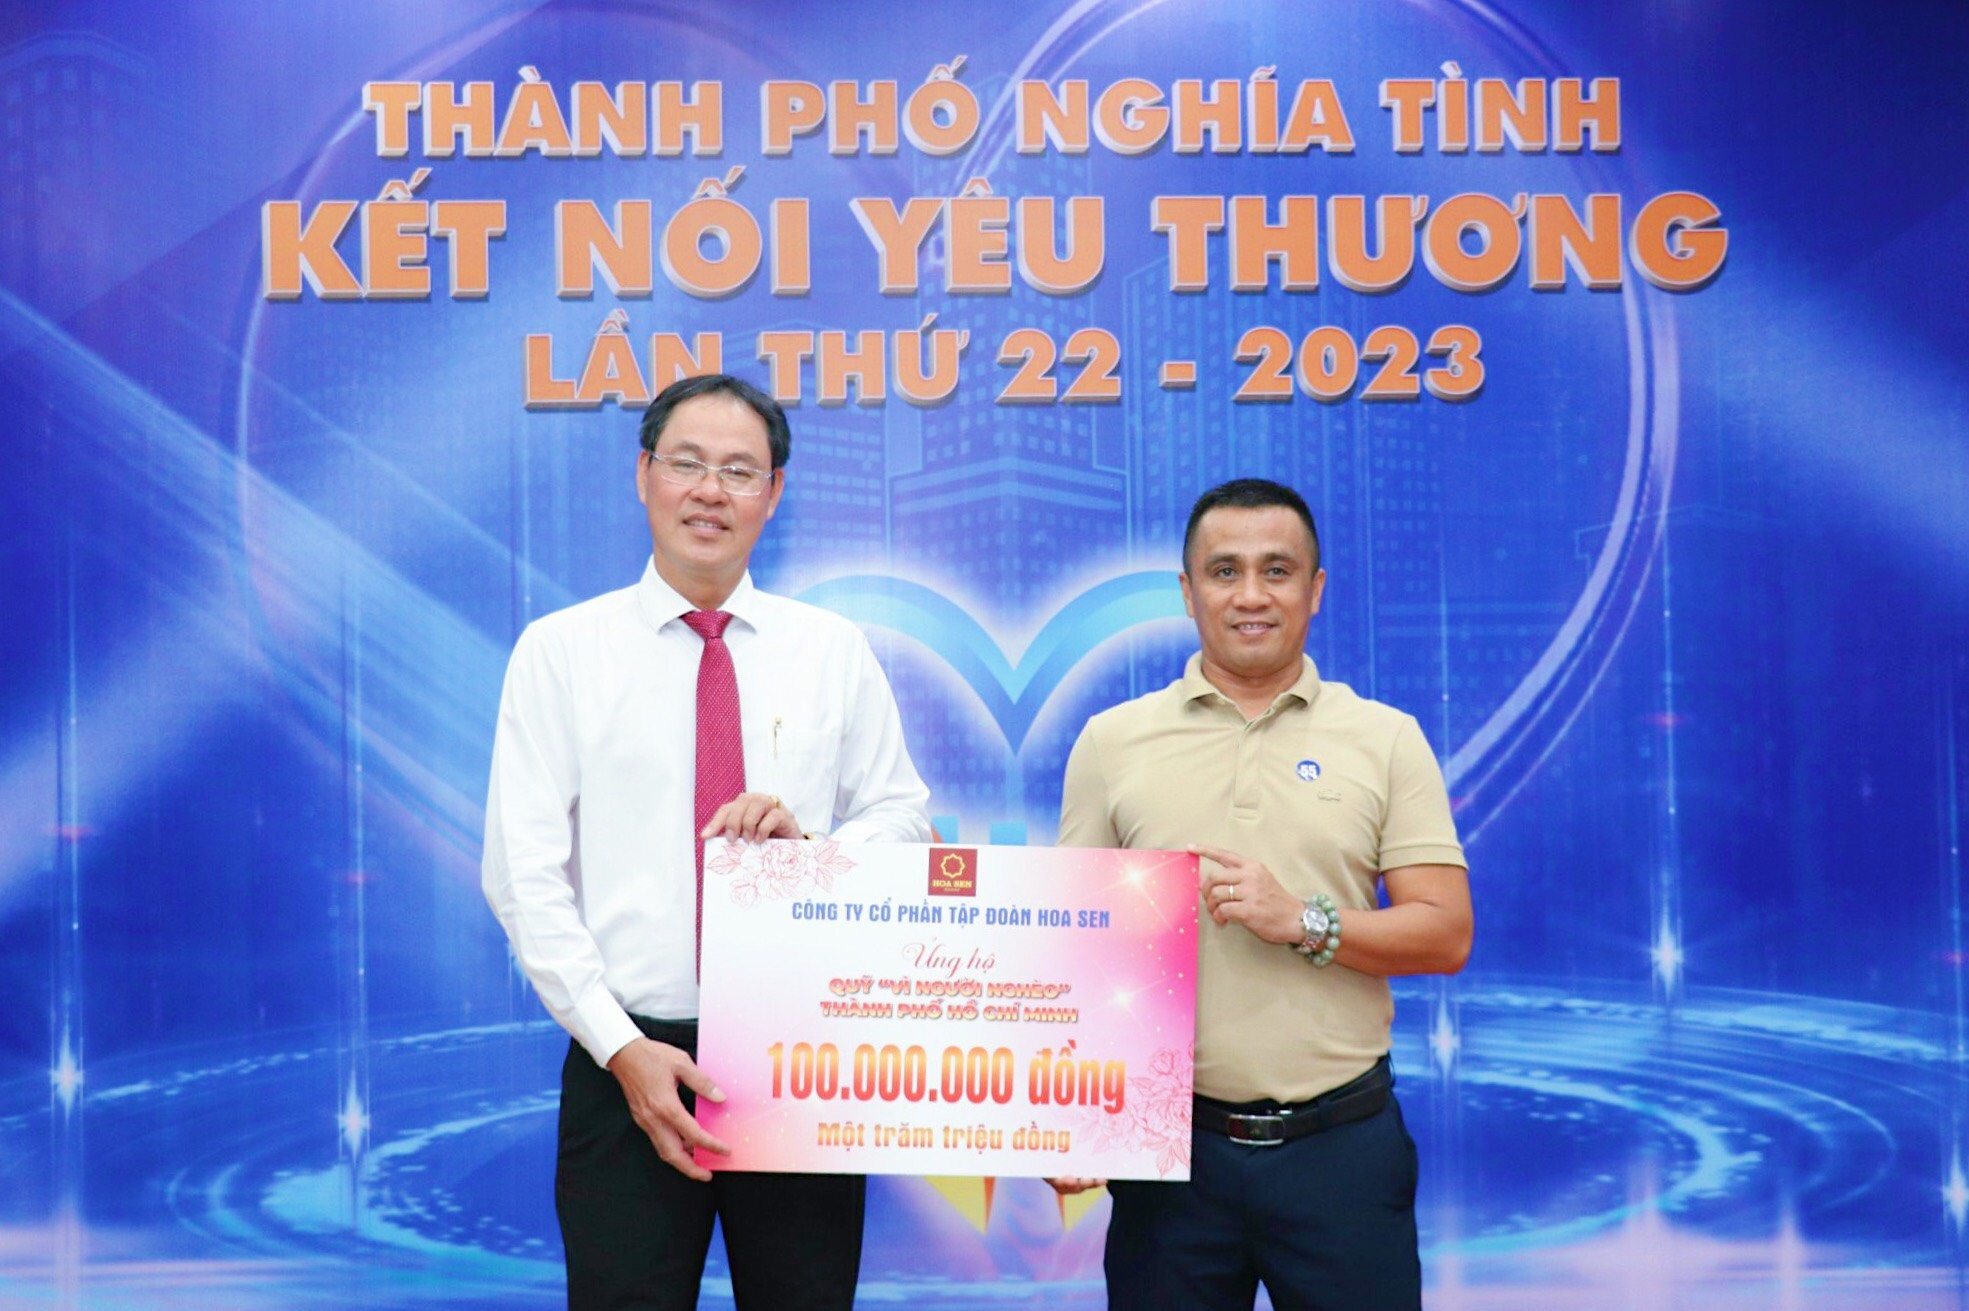 Ông Trần Đình Tài - Giám đốc điều hành Marketing - Truyền thông, đại diện Tập đoàn Hoa Sen trao ủng hộ 100 triệu đồng cho Quỹ “Vì người nghèo” TP. Hồ Chí Minh